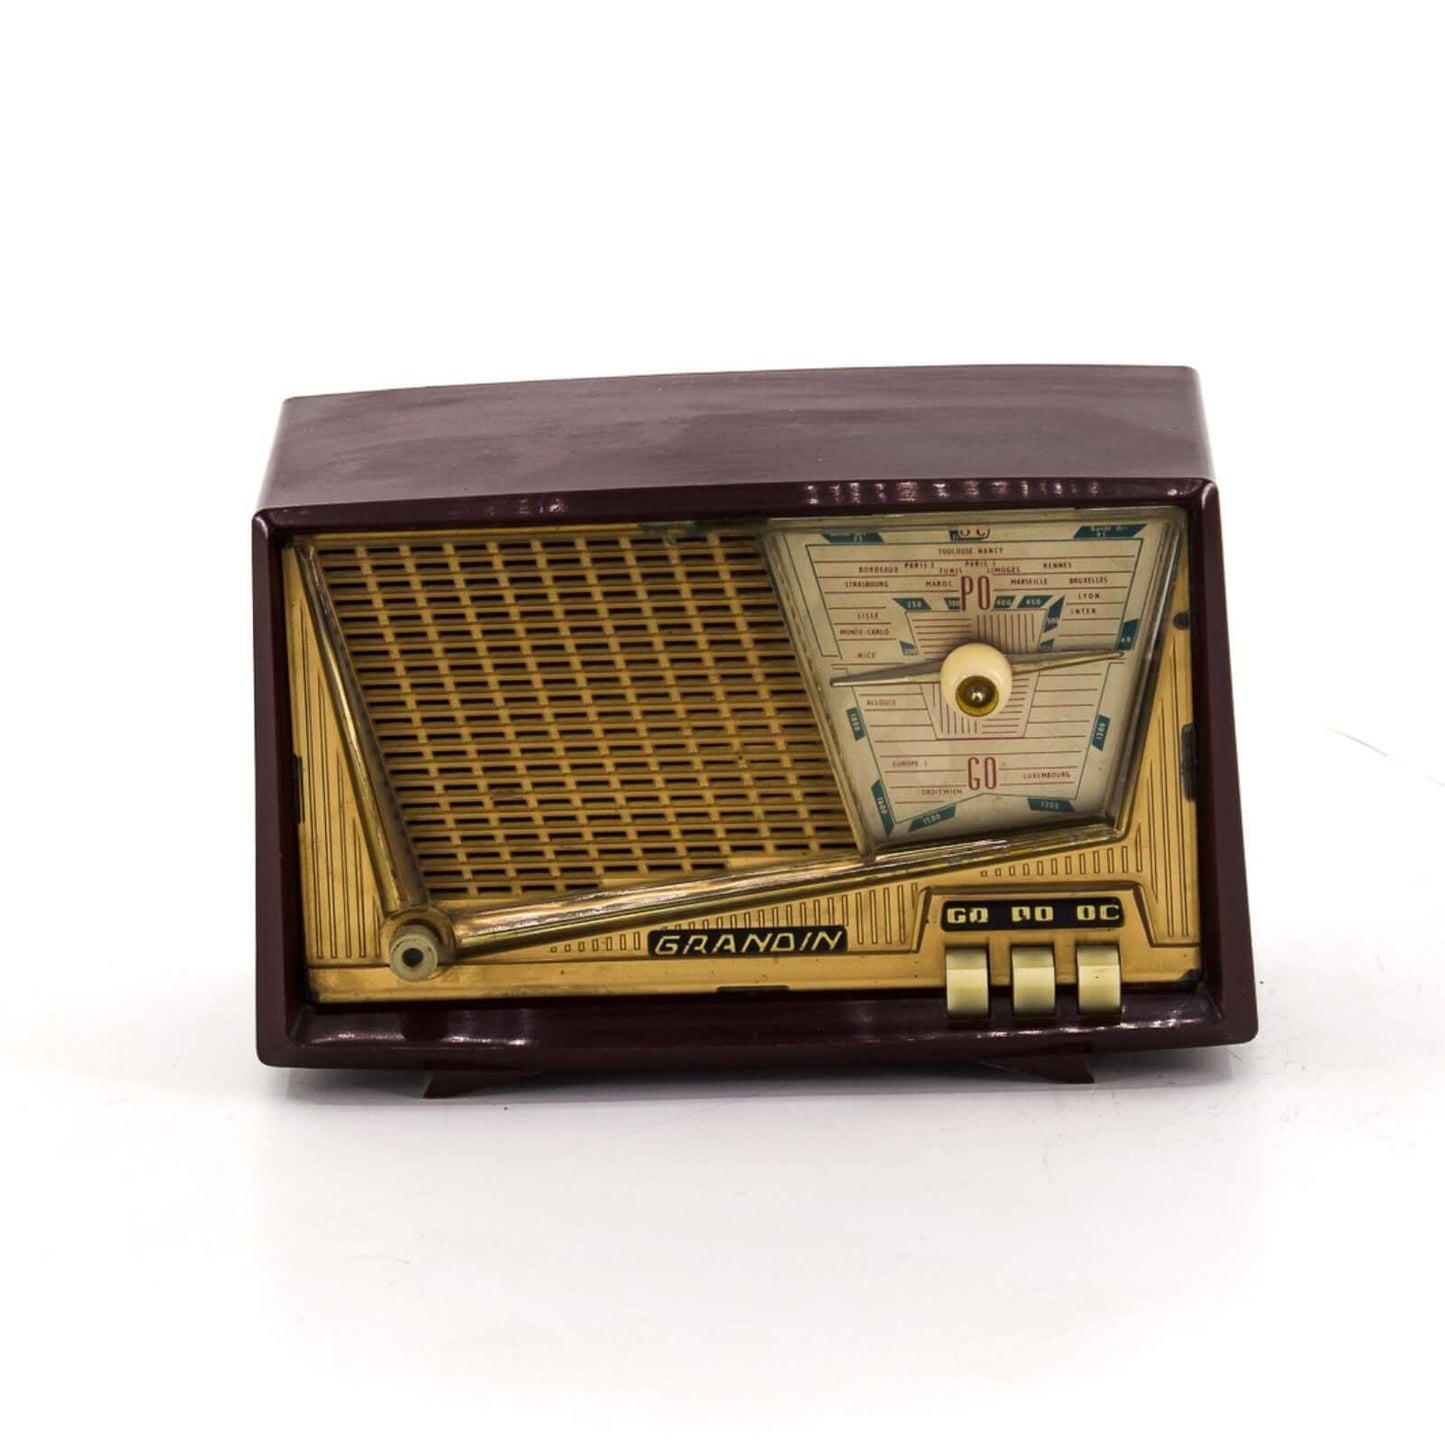 Radio Bluetooth Cristal Grandin Vintage 60's enceinte connectée française haut de gamme absolument prodige radio vintage